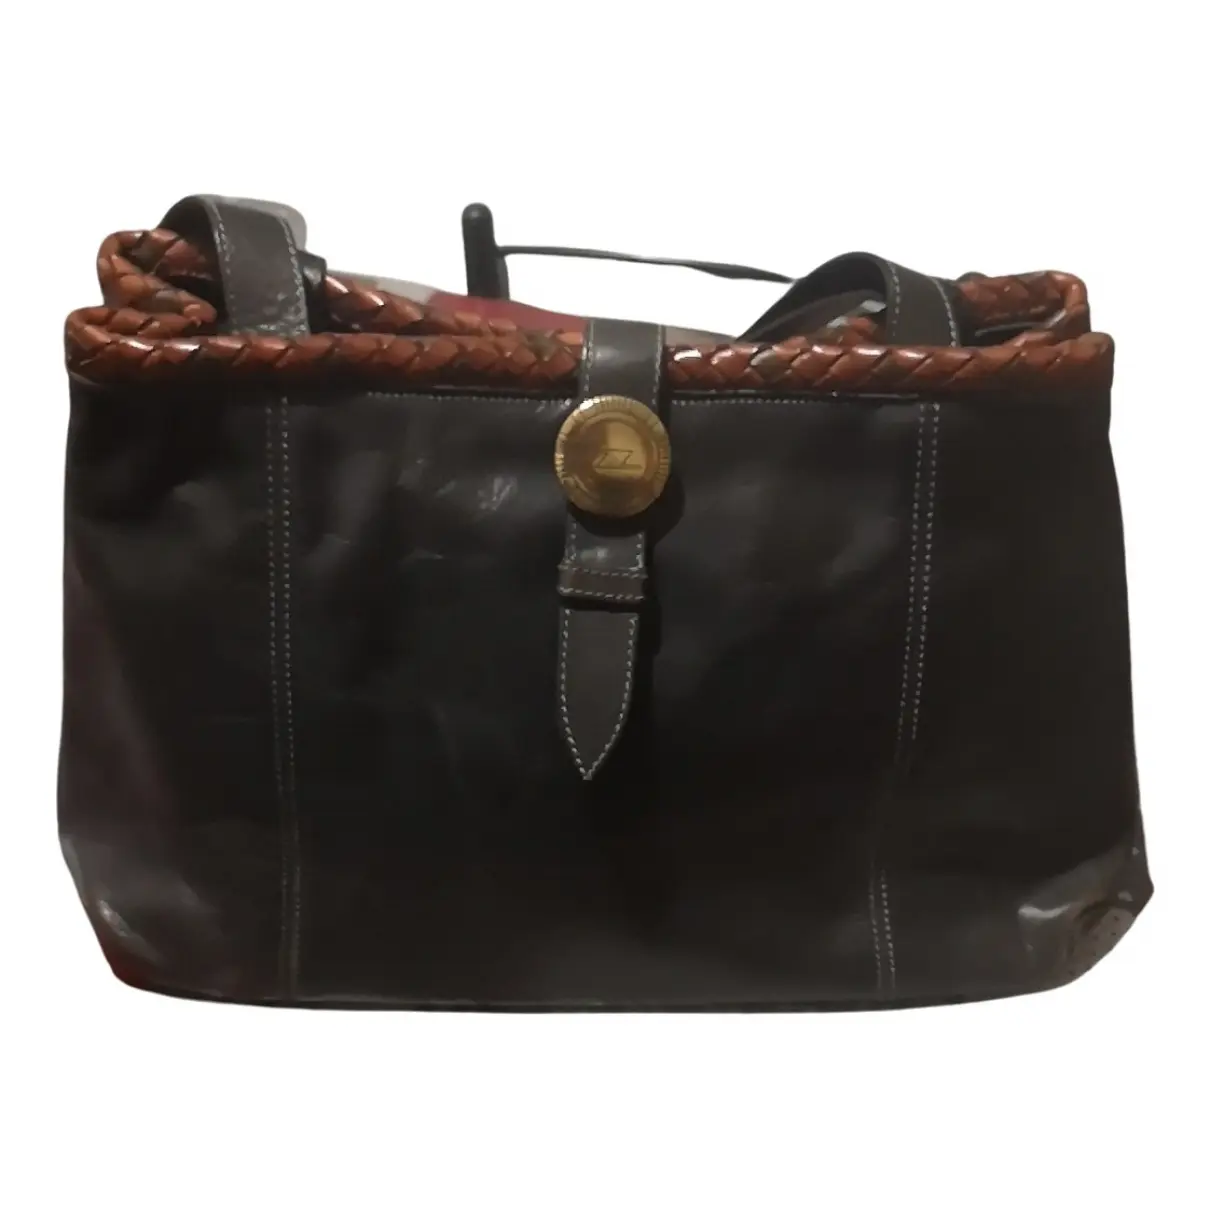 Leather handbag Zenith